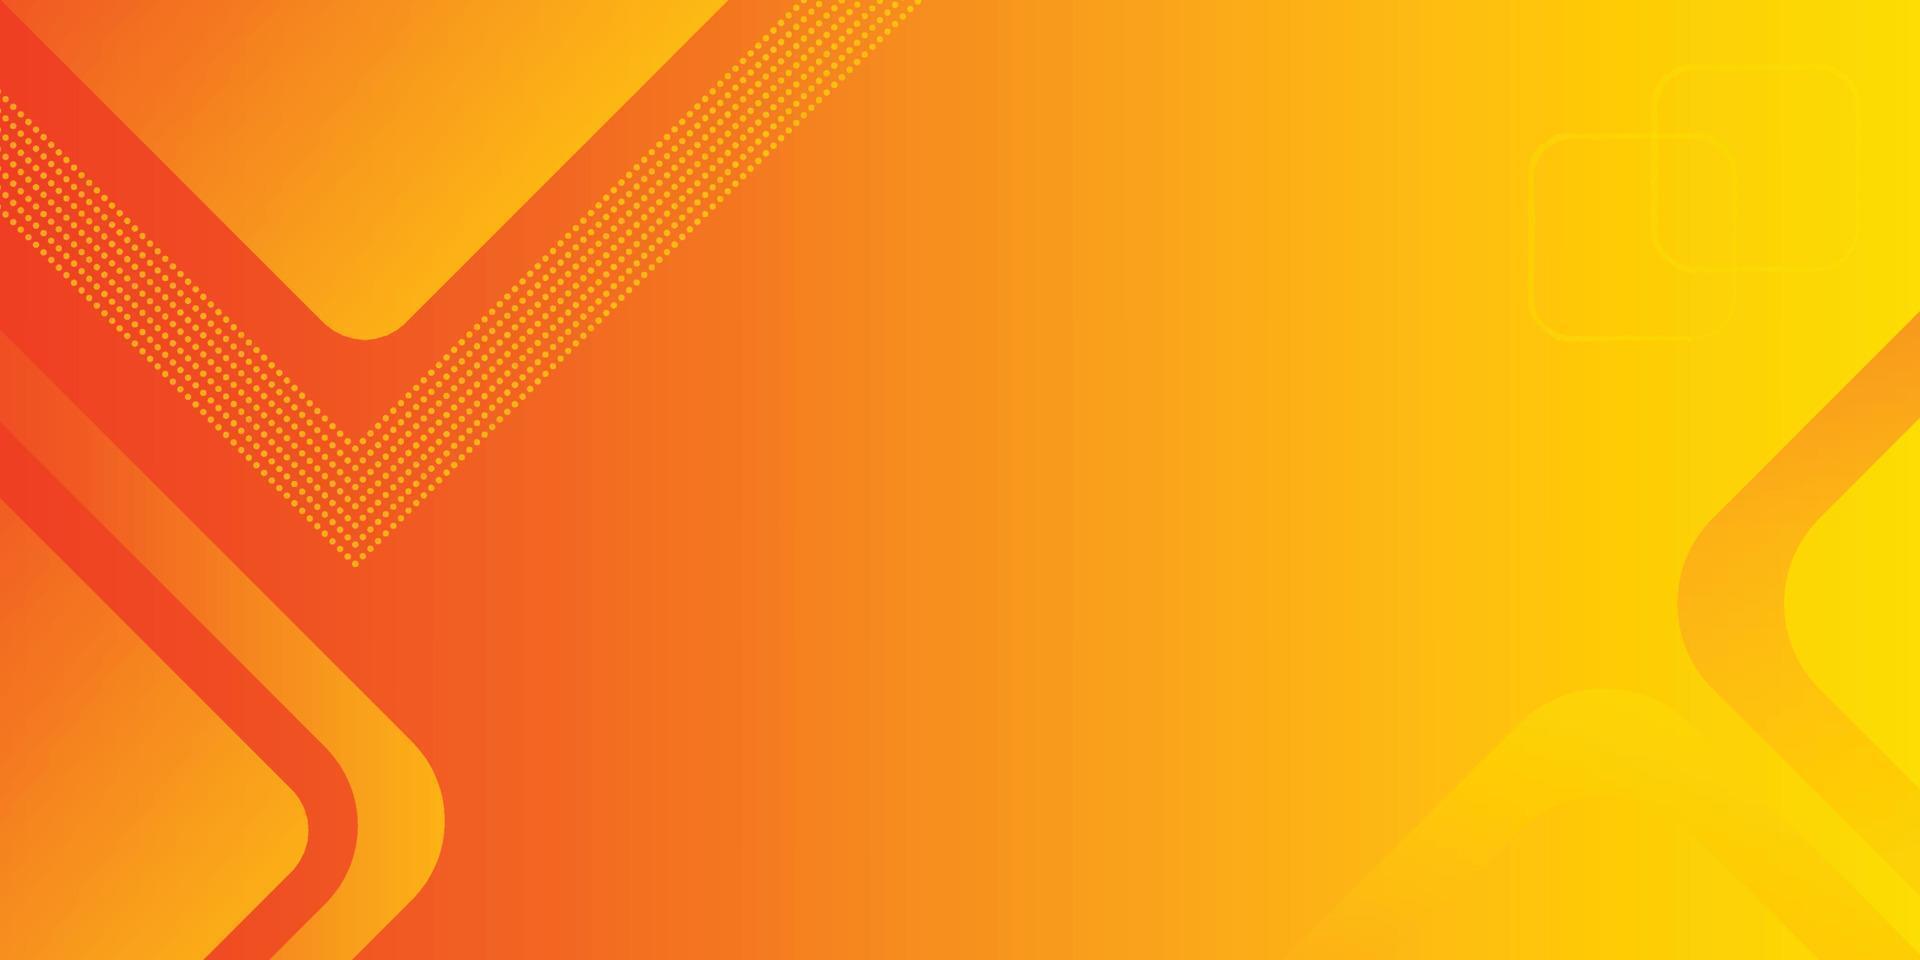 moderne oranje abstracte achtergrond voor presentatieontwerp, oranje abstract gebruik voor zaken, corporate, instelling, poster, sjabloon, feest, feestelijk, seminar, boekje, eps10-vector, illustratie vector